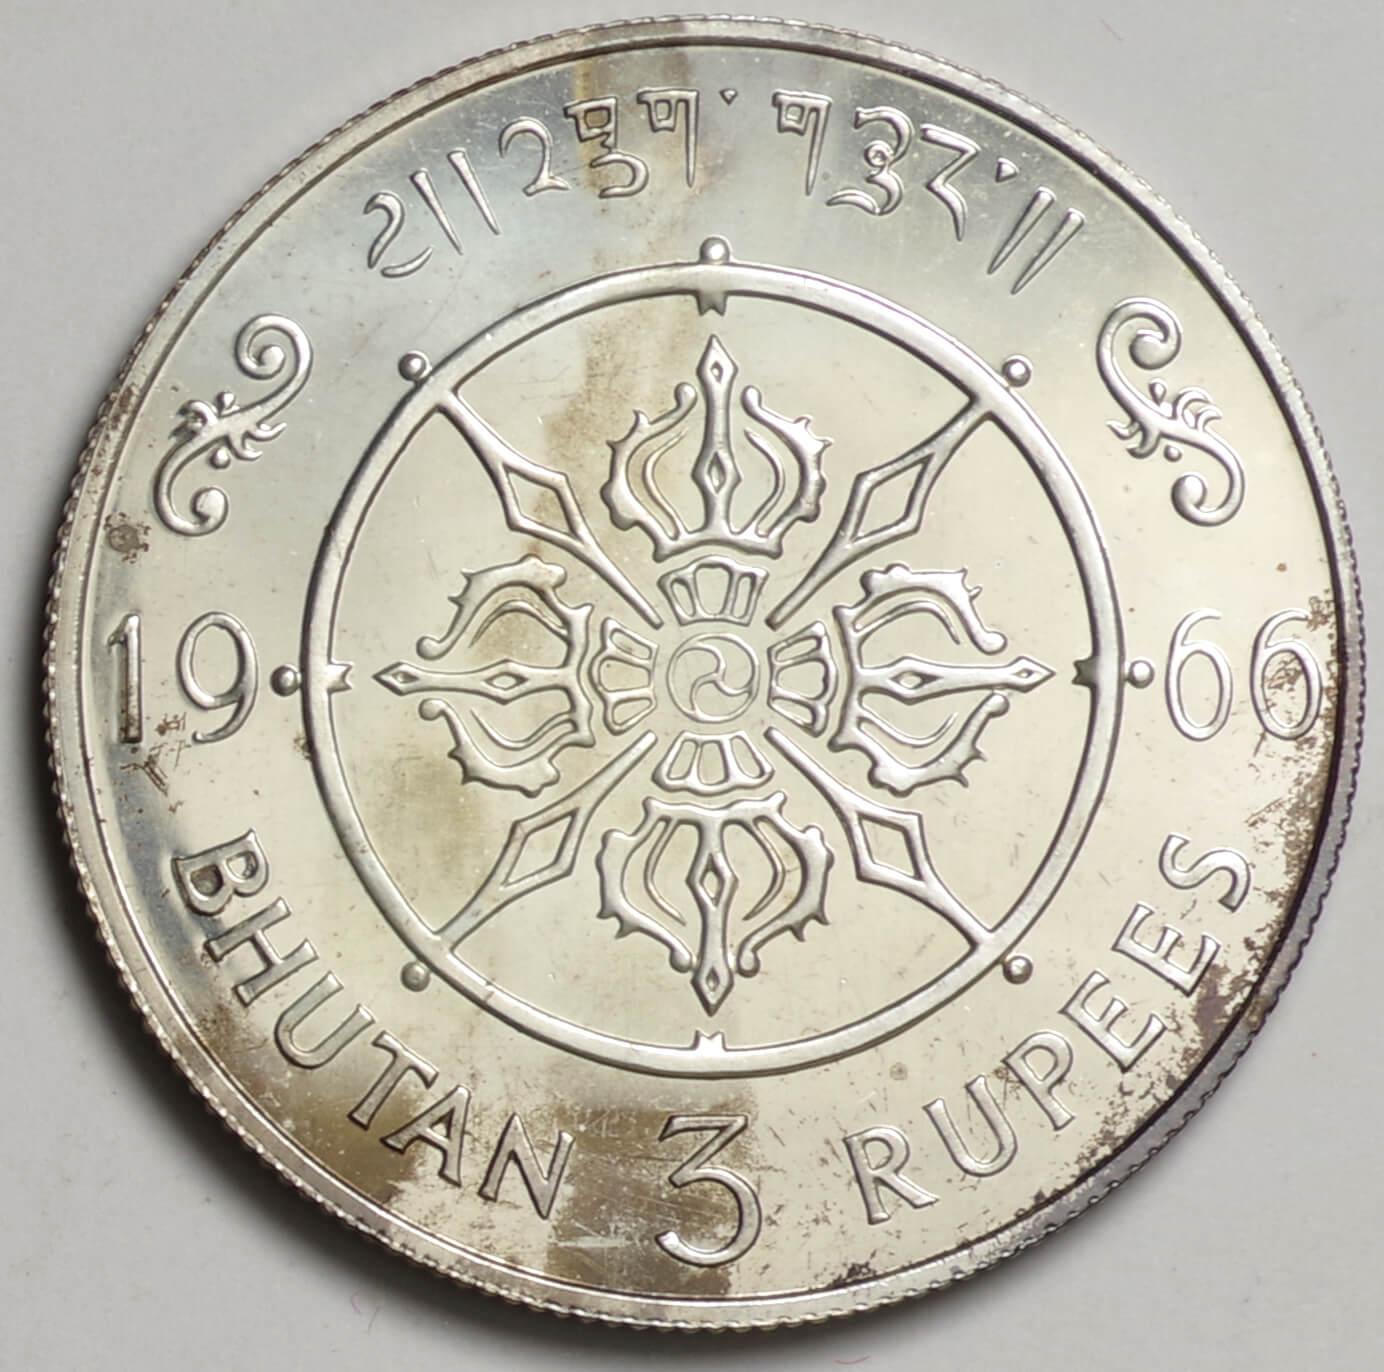 ﾌﾞｰﾀﾝ-Buhtan ジグミ・ワンチュク即位40周年記念 3ルピー銀貨 1966年